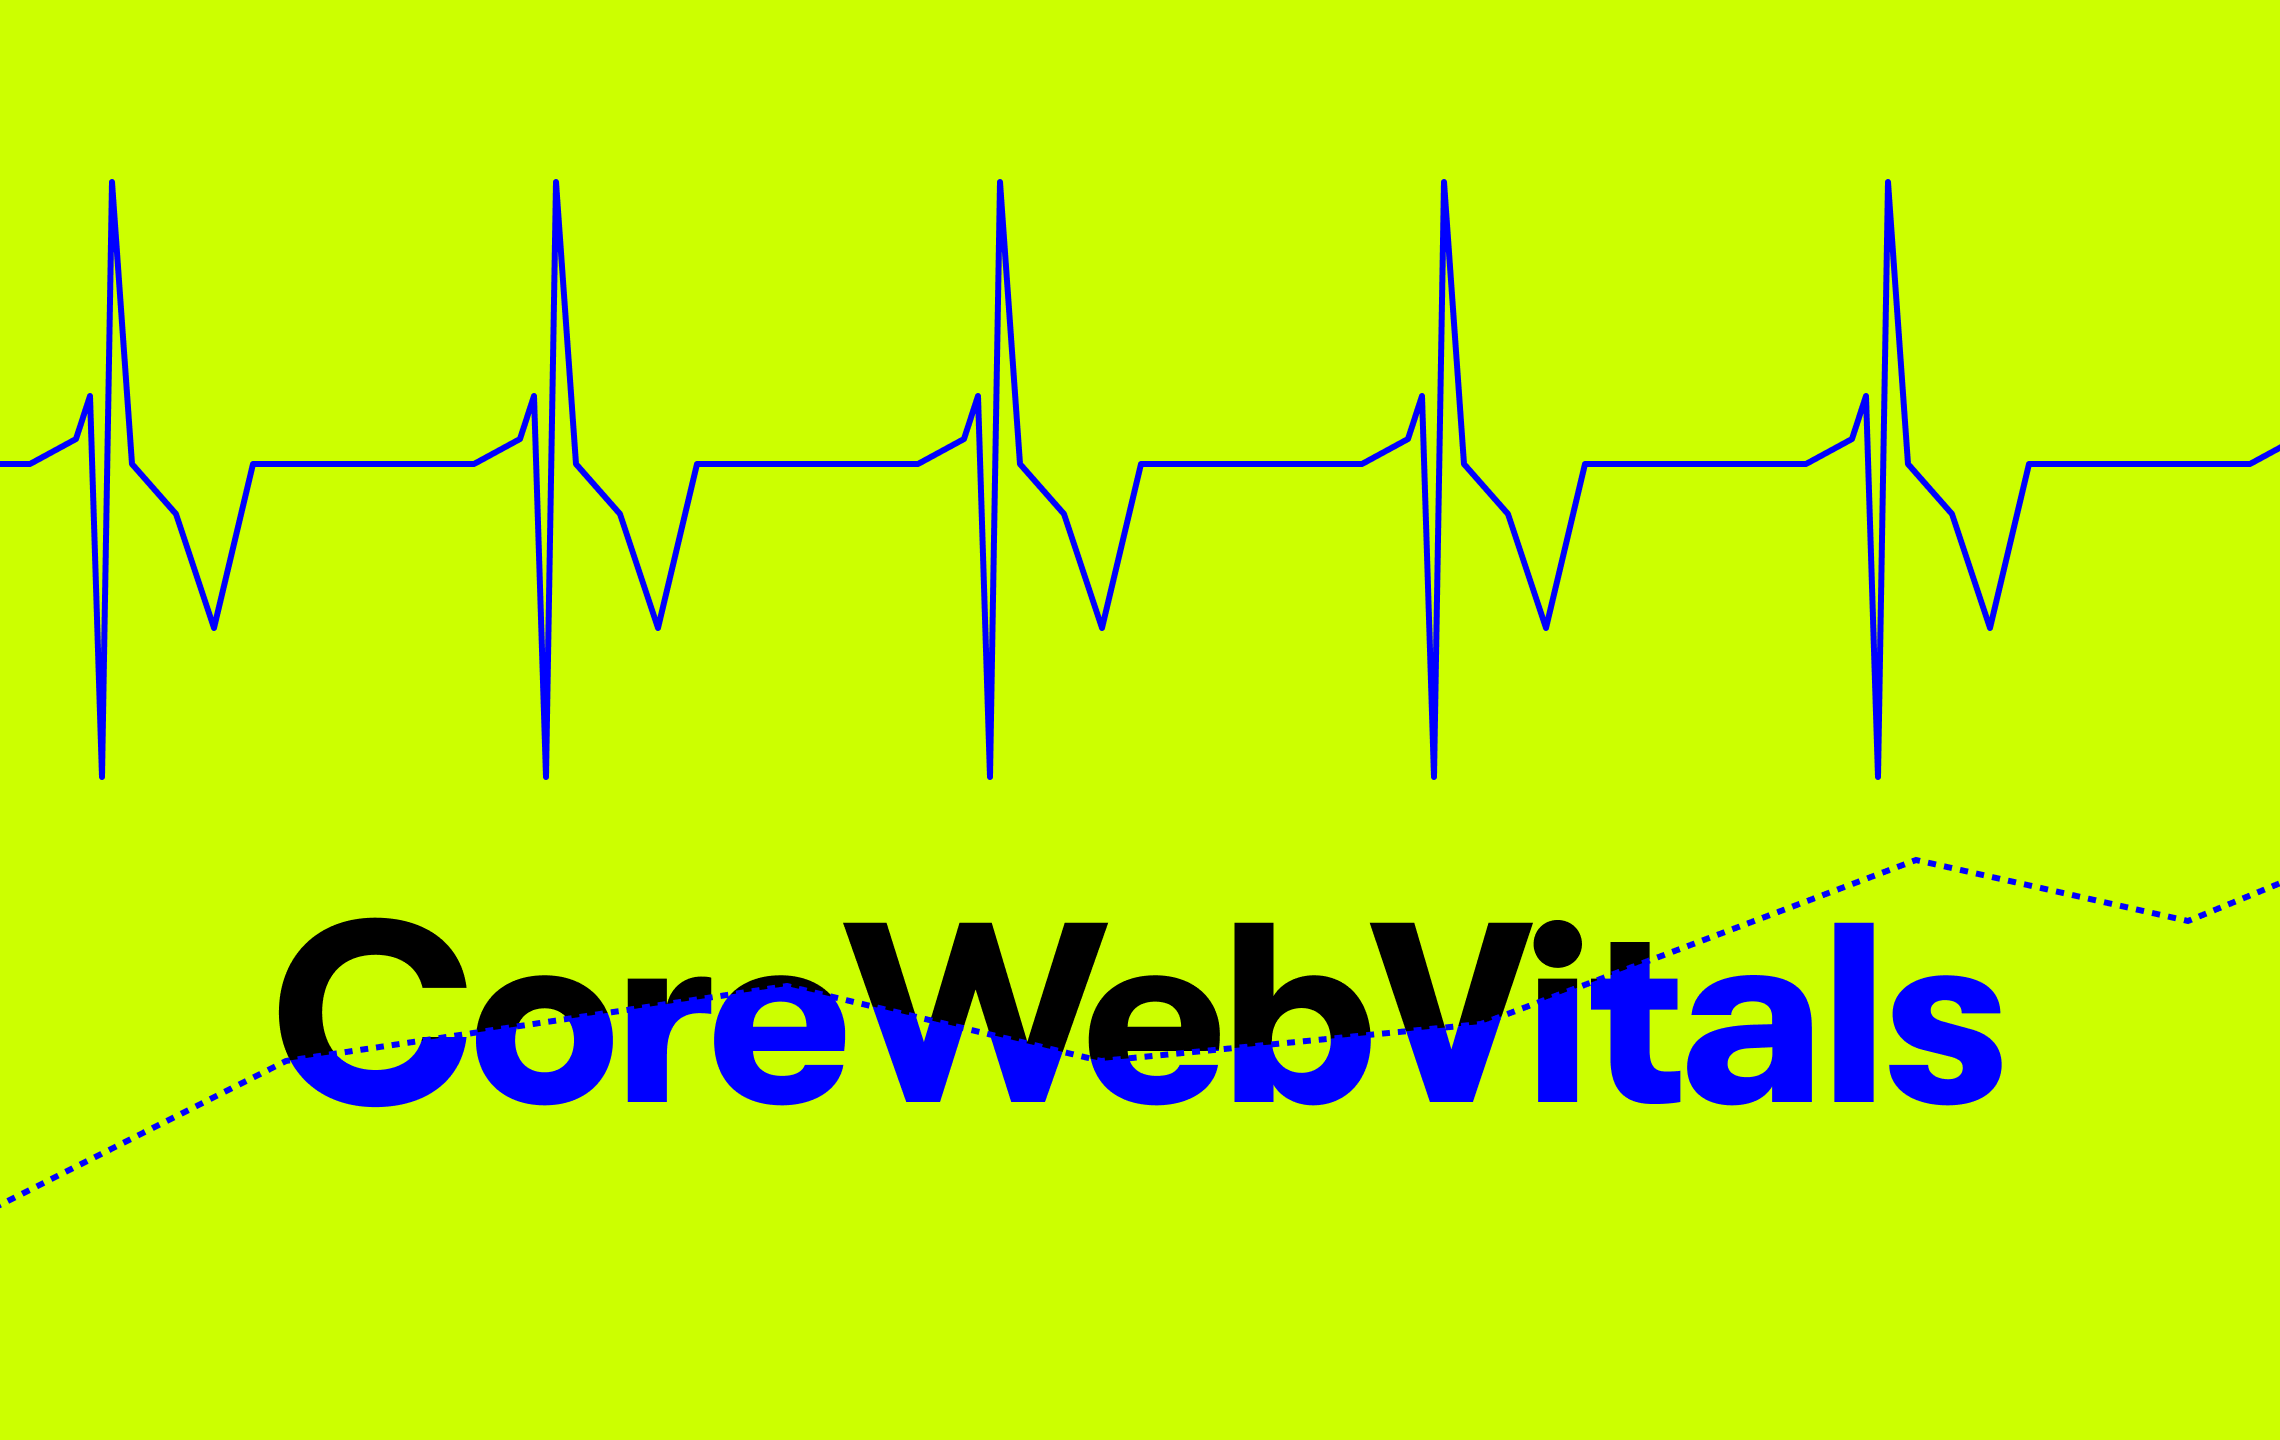 Darstellung einer Herzfrequenz vor einem grünen Hintergrund. Darunter steht: Core Web Vitals